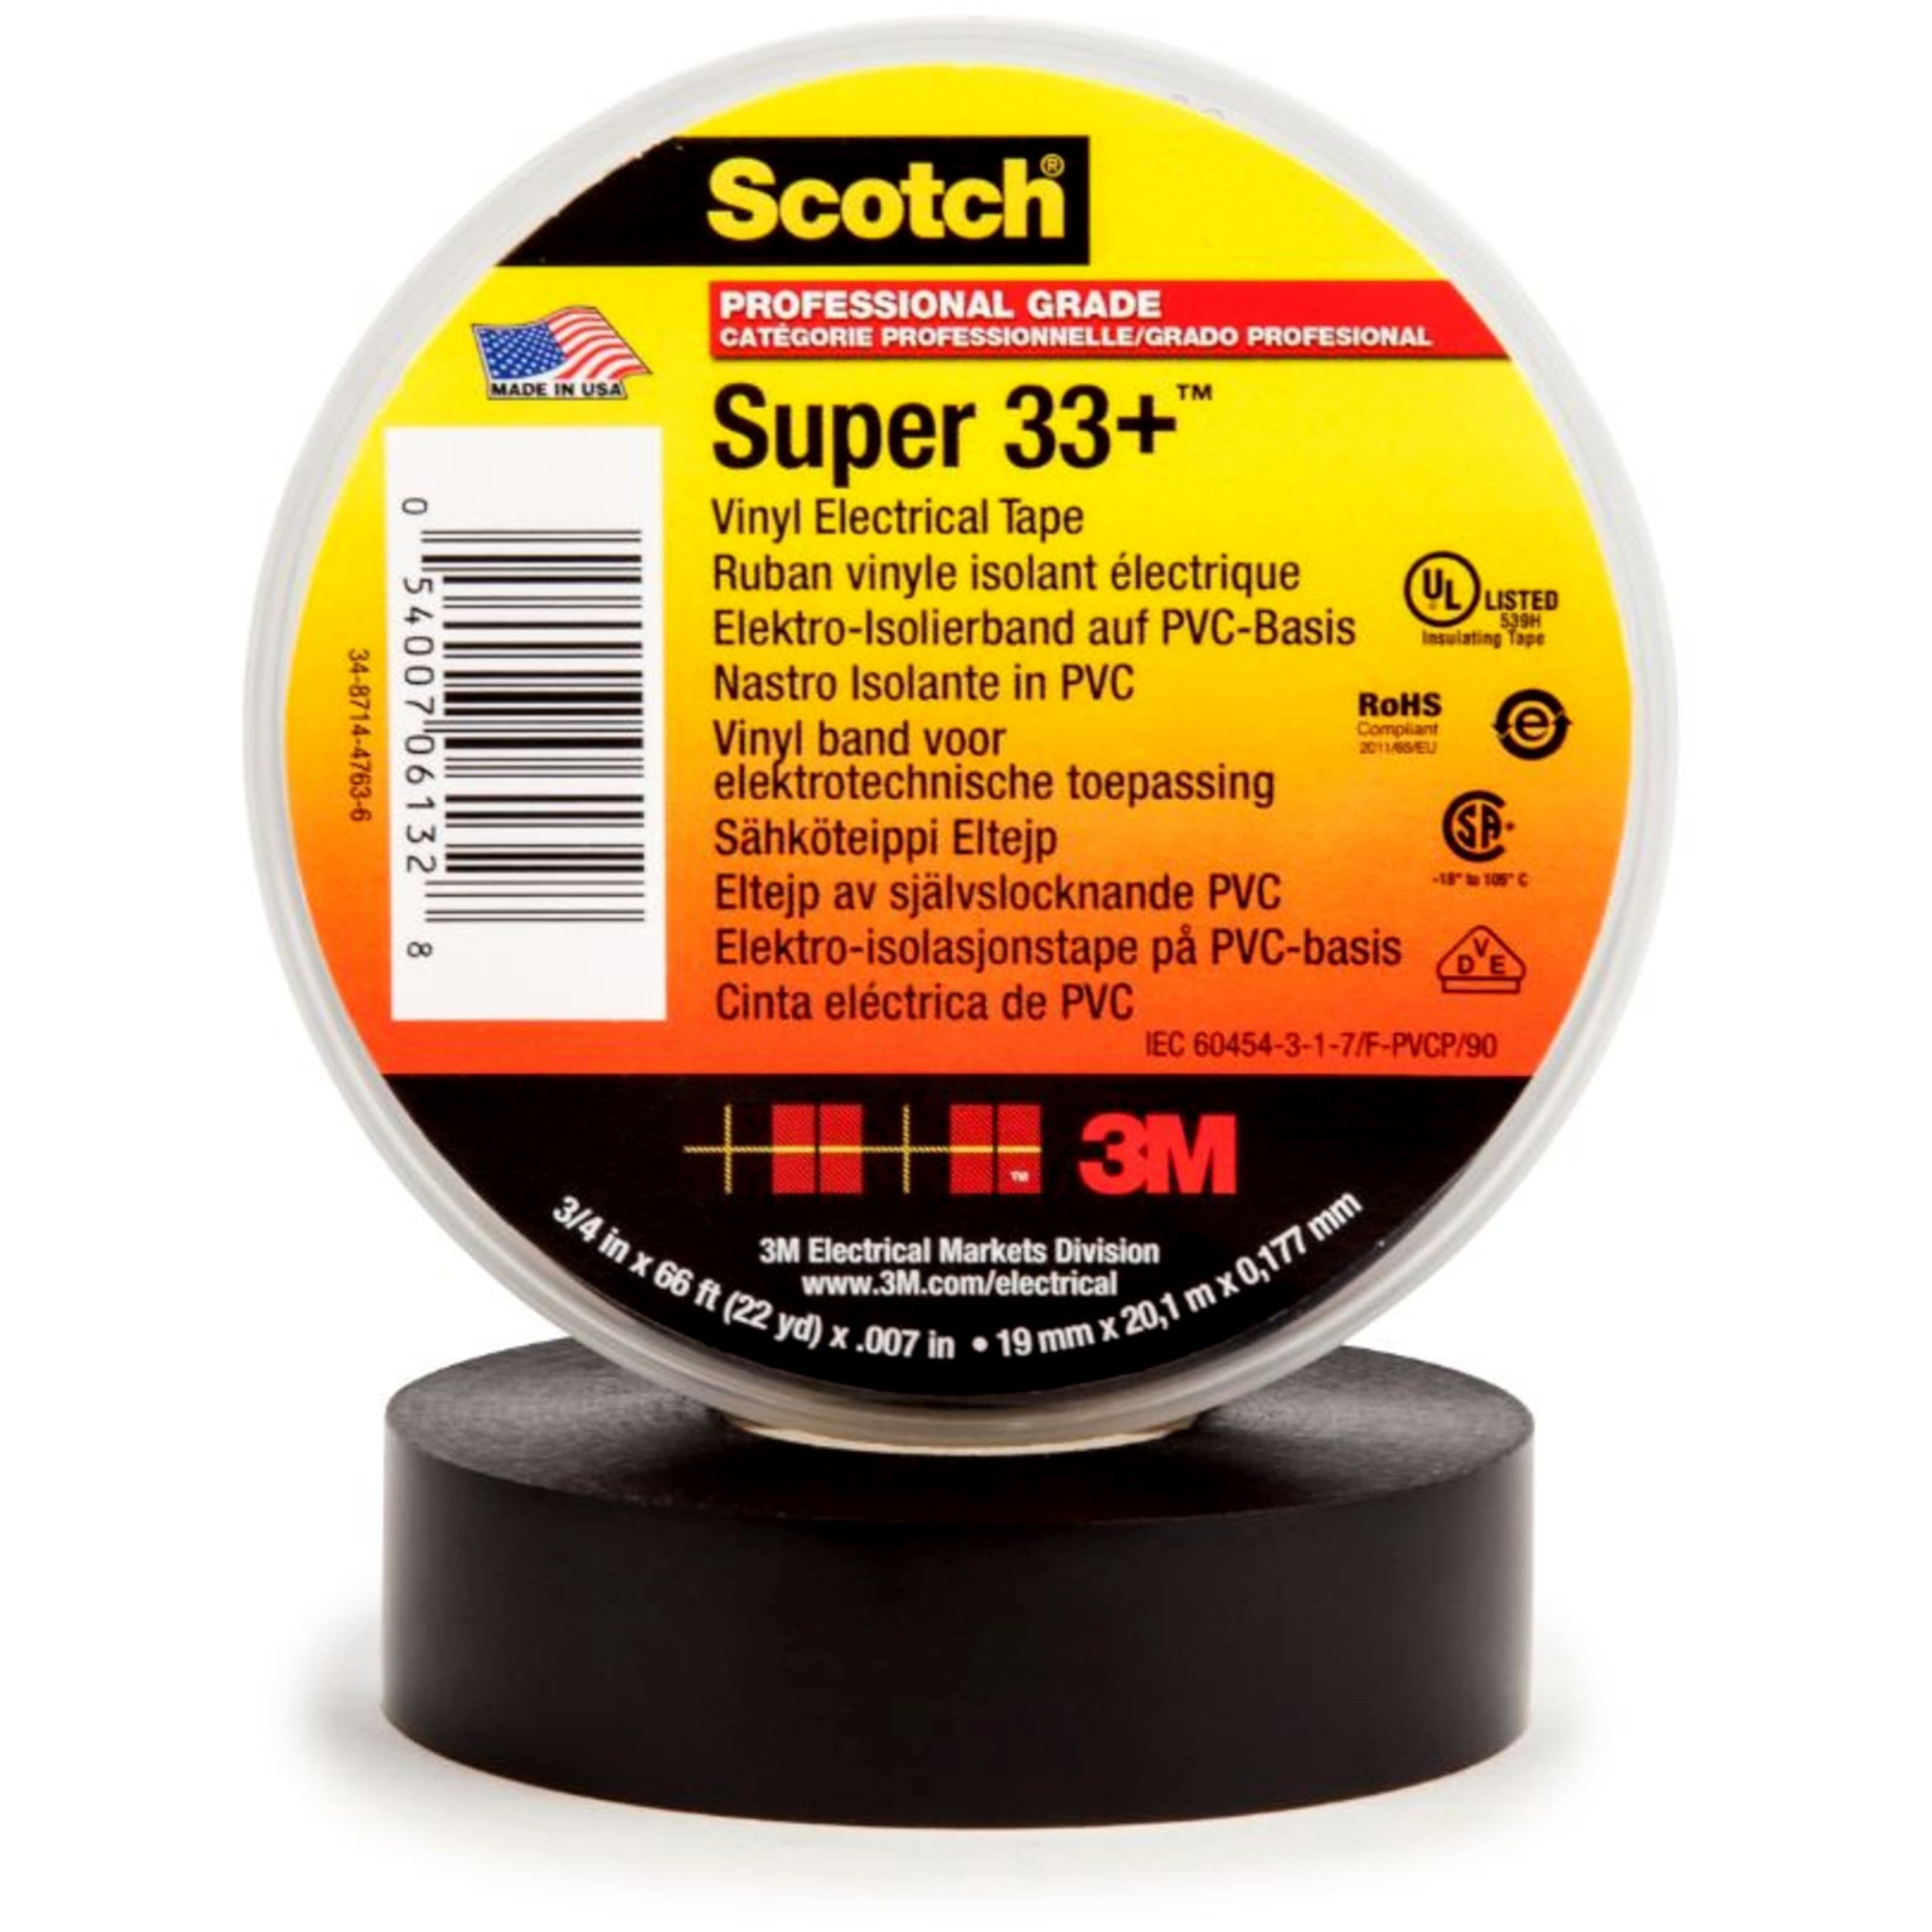 3M - Scotch Super 33+ Vinyl elektrische isolatietape, zwart, 19mm x 20m, 0,18mm